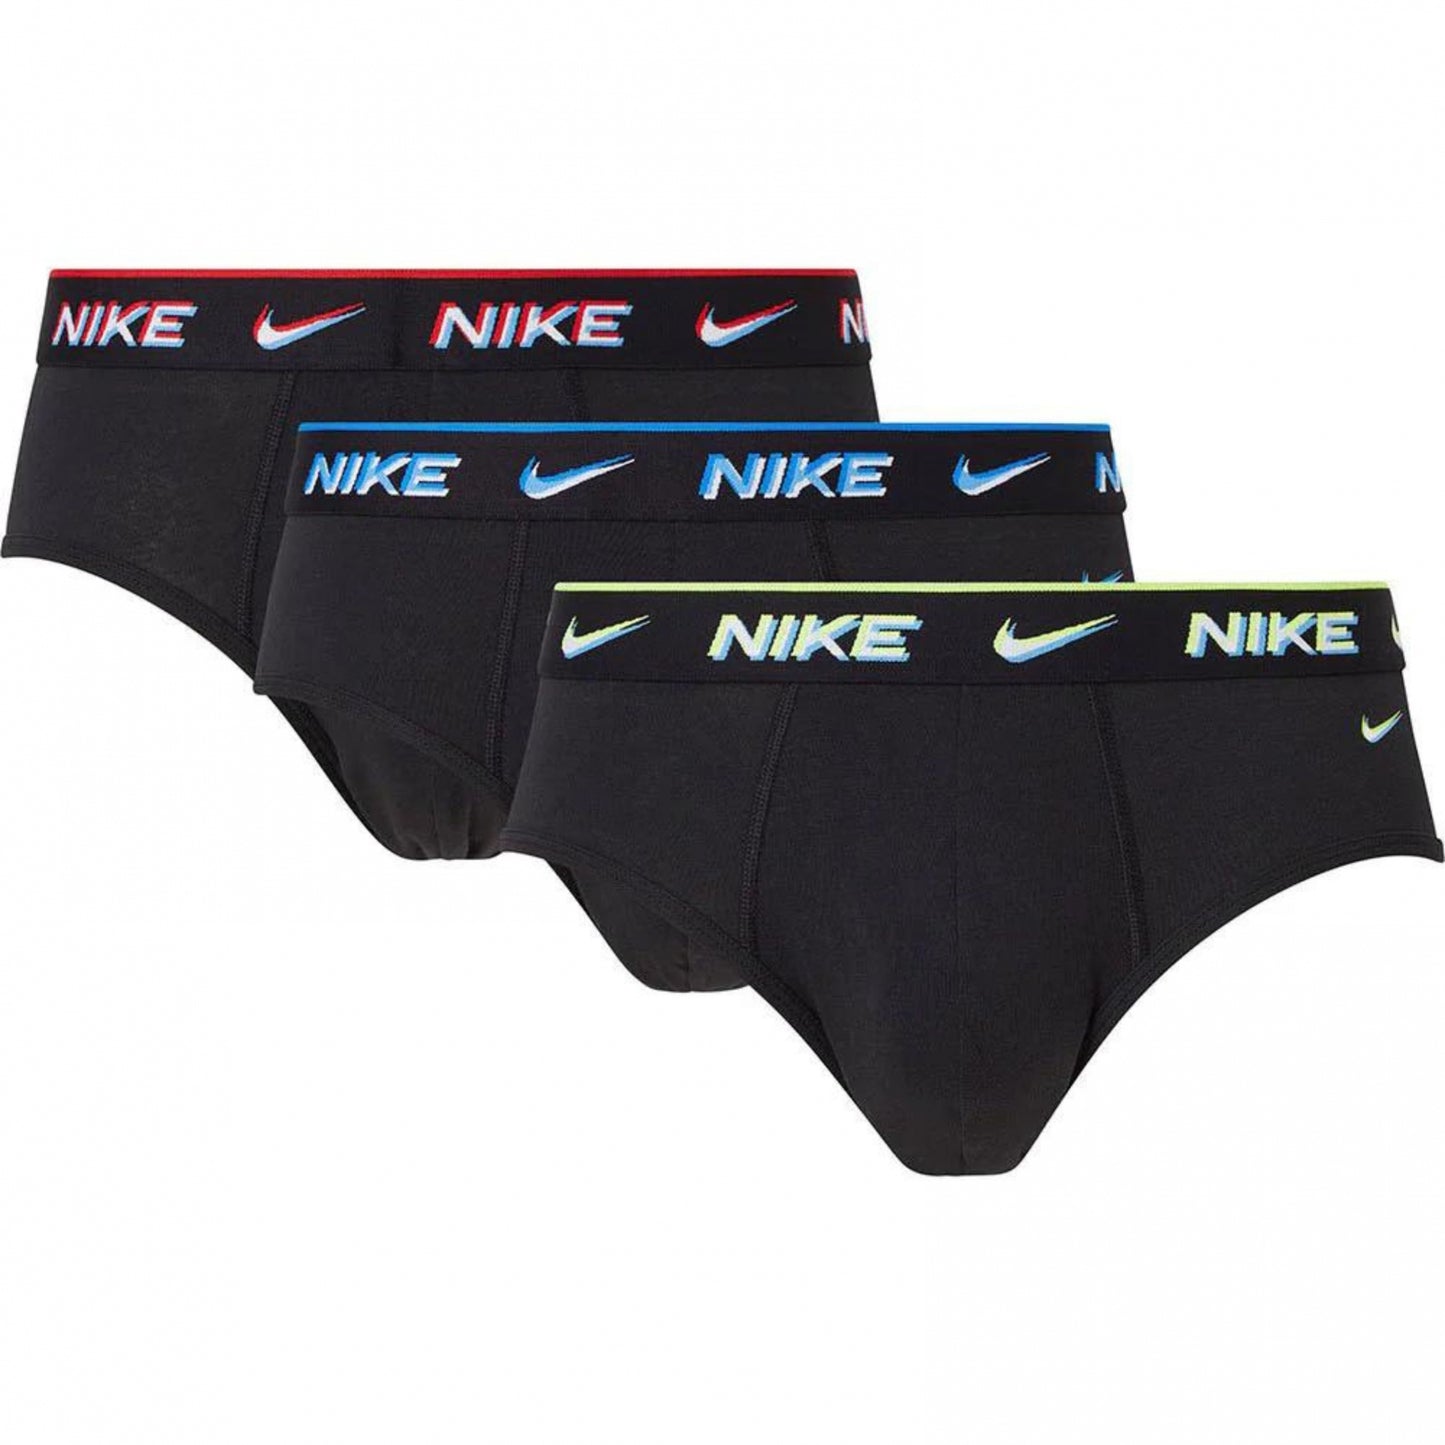 Nike Brief Underwear 3 Pack Briefs